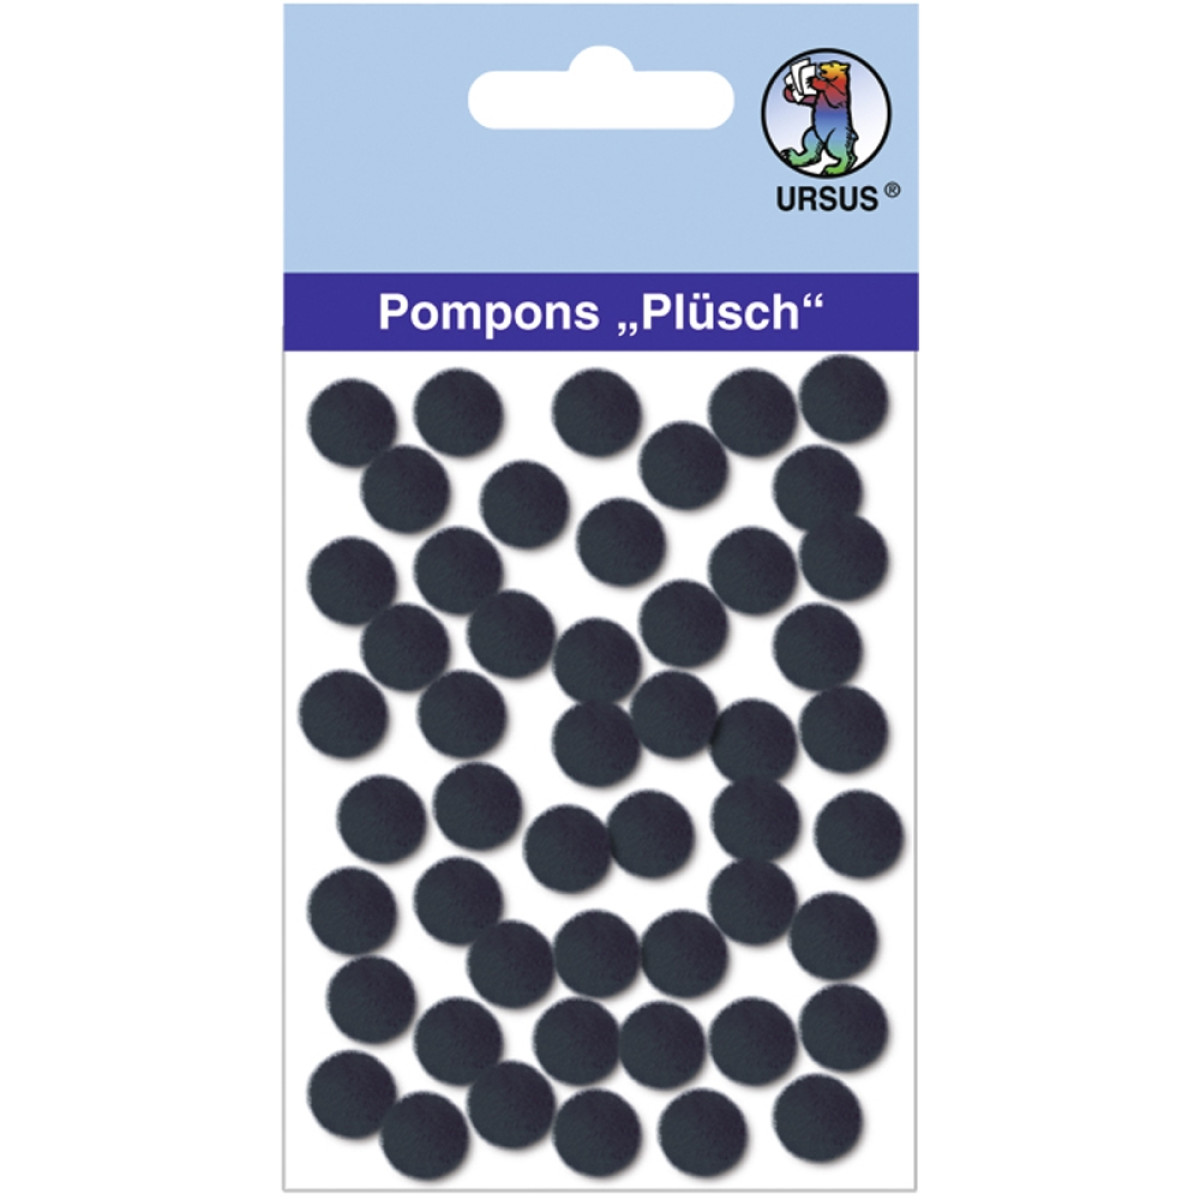 Pompons "Plüsch" 10 mm schwarz